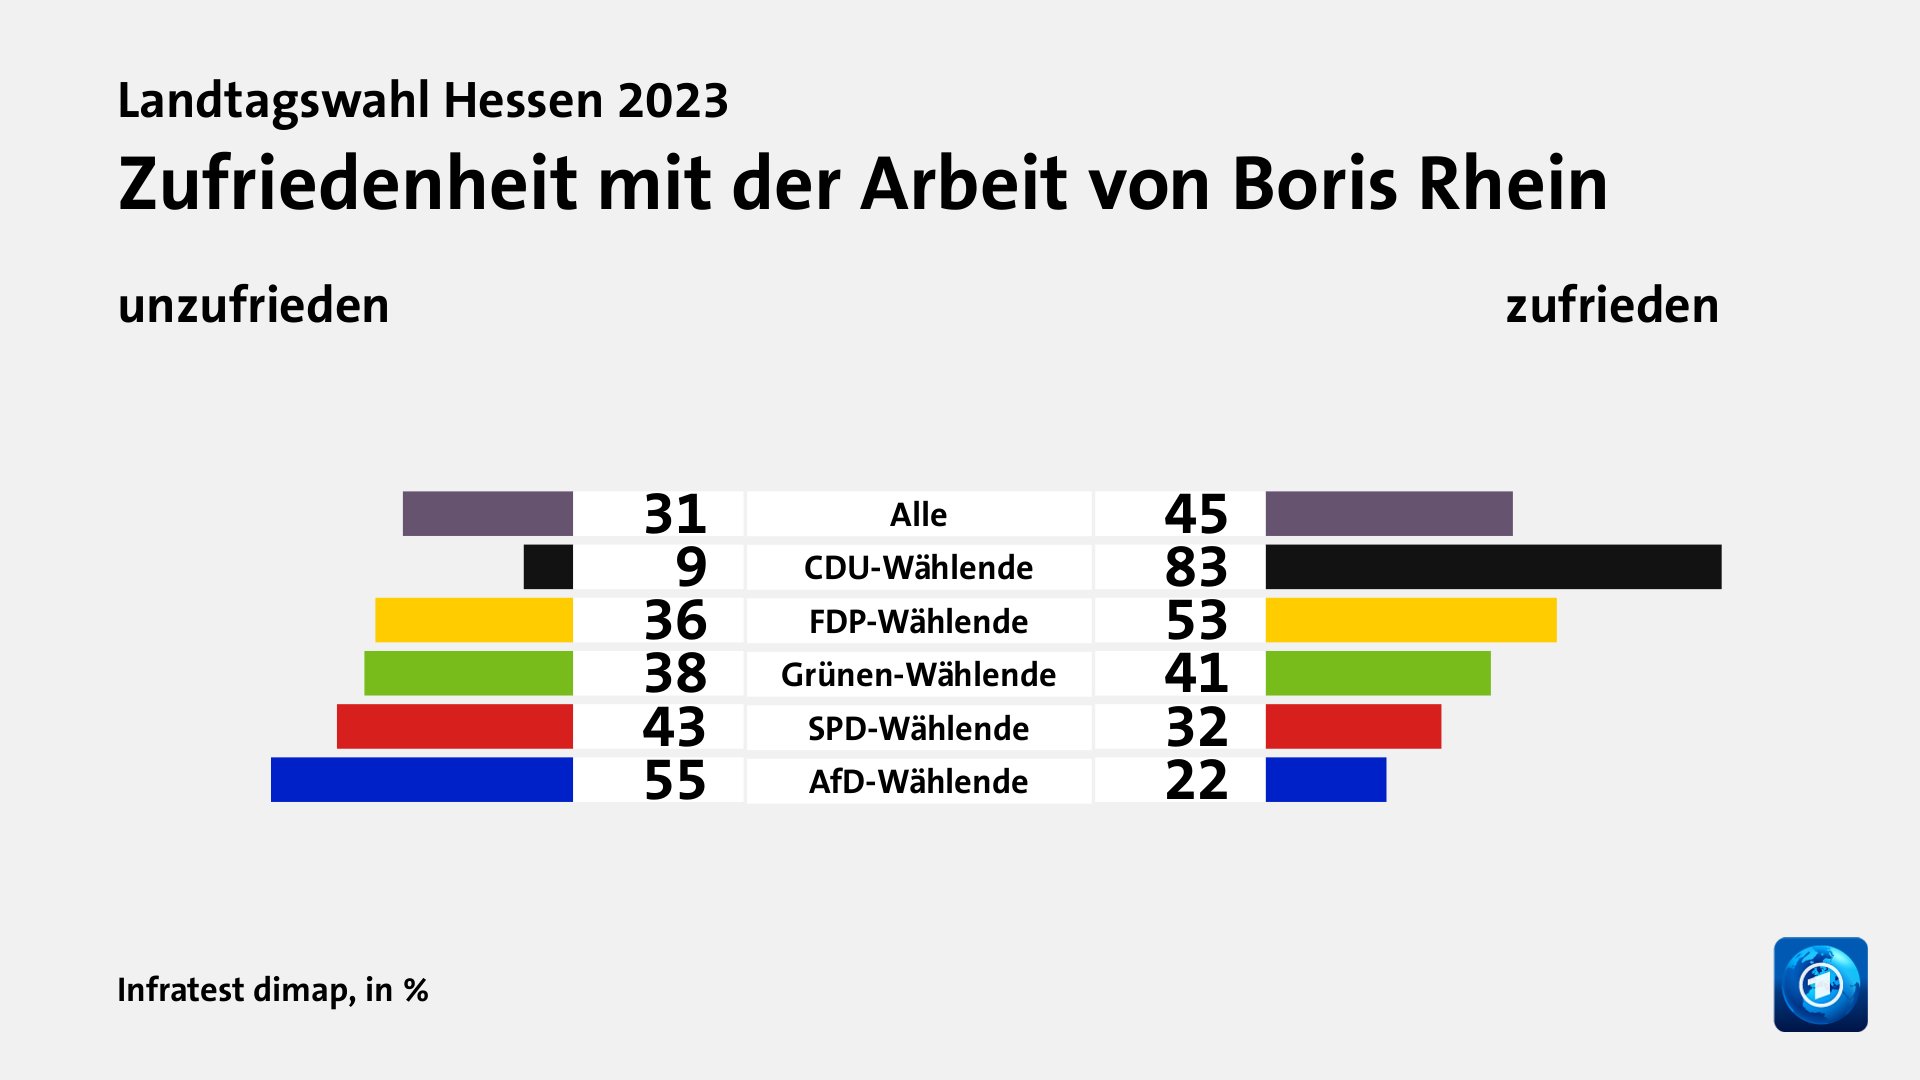 Zufriedenheit mit der Arbeit von Boris Rhein (in %) Alle: unzufrieden 31, zufrieden 45; CDU-Wählende: unzufrieden 9, zufrieden 83; FDP-Wählende: unzufrieden 36, zufrieden 53; Grünen-Wählende: unzufrieden 38, zufrieden 41; SPD-Wählende: unzufrieden 43, zufrieden 32; AfD-Wählende: unzufrieden 55, zufrieden 22; Quelle: Infratest dimap